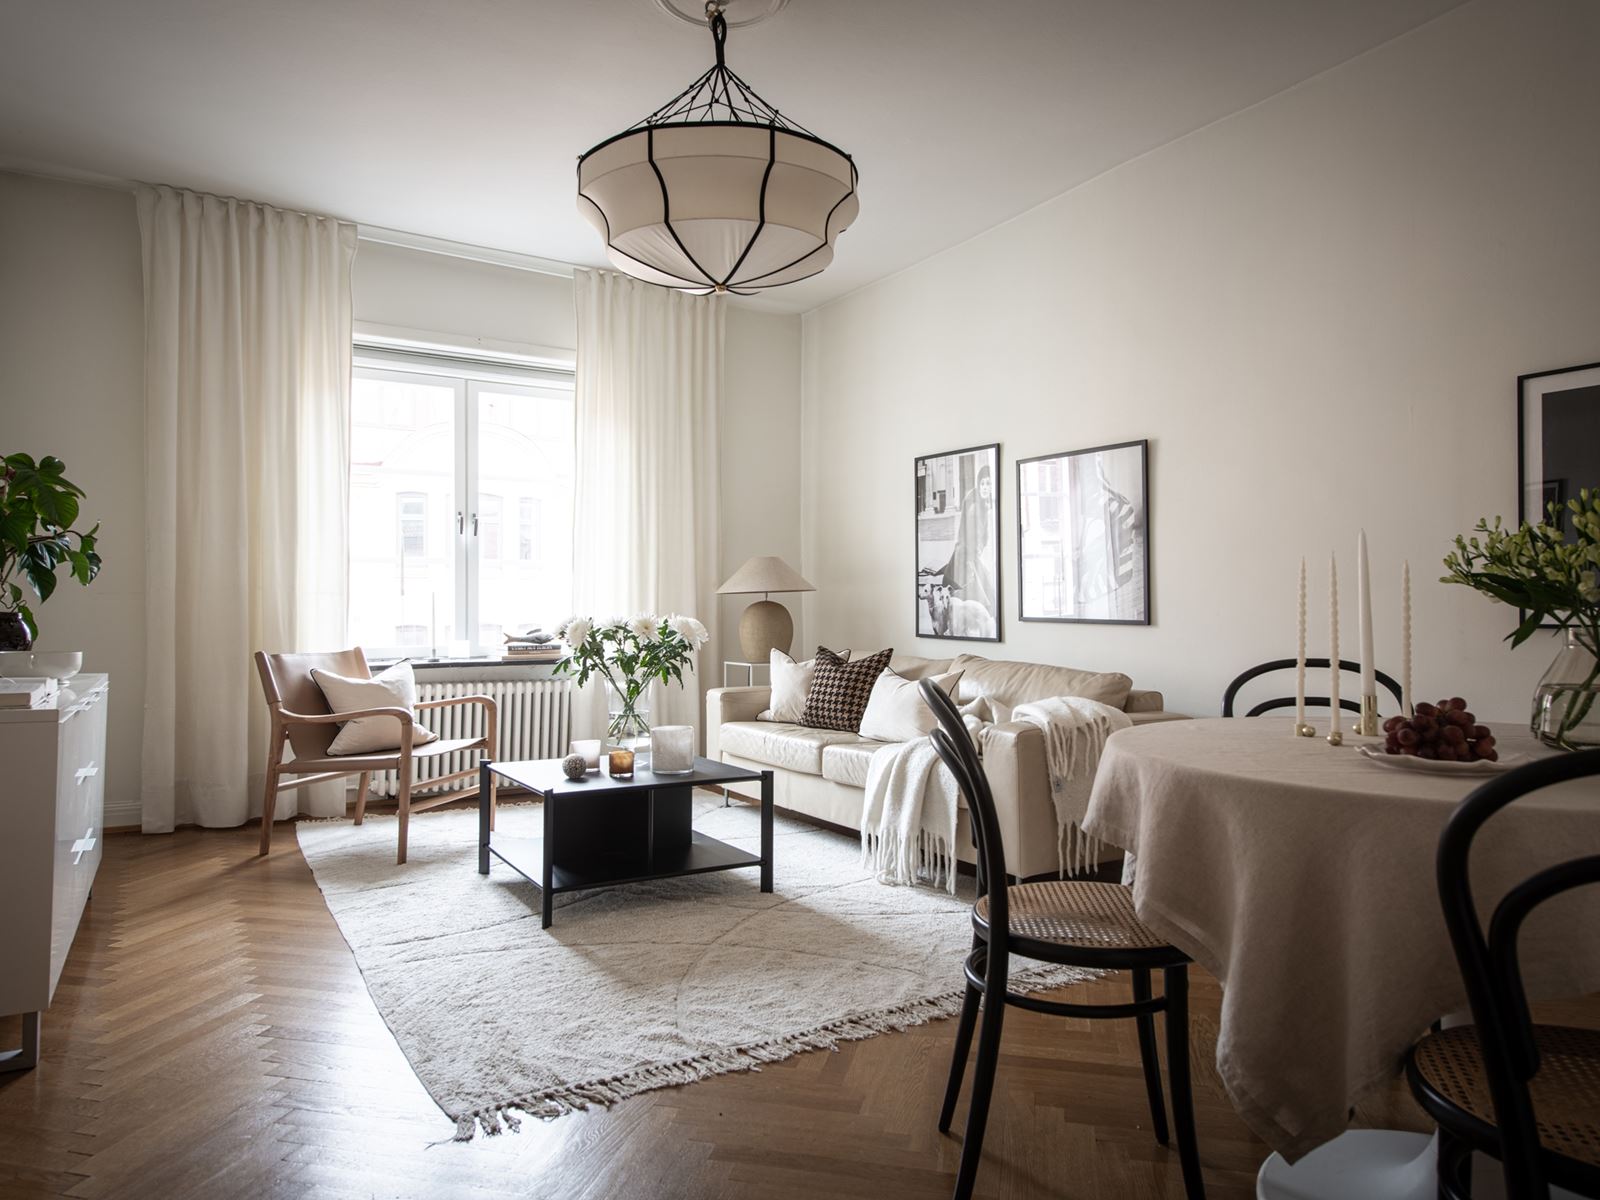 Bjurfors Century presenterar en strålande 20-tals lägenhet. Tegnérsgatan 11A - Bjurfors